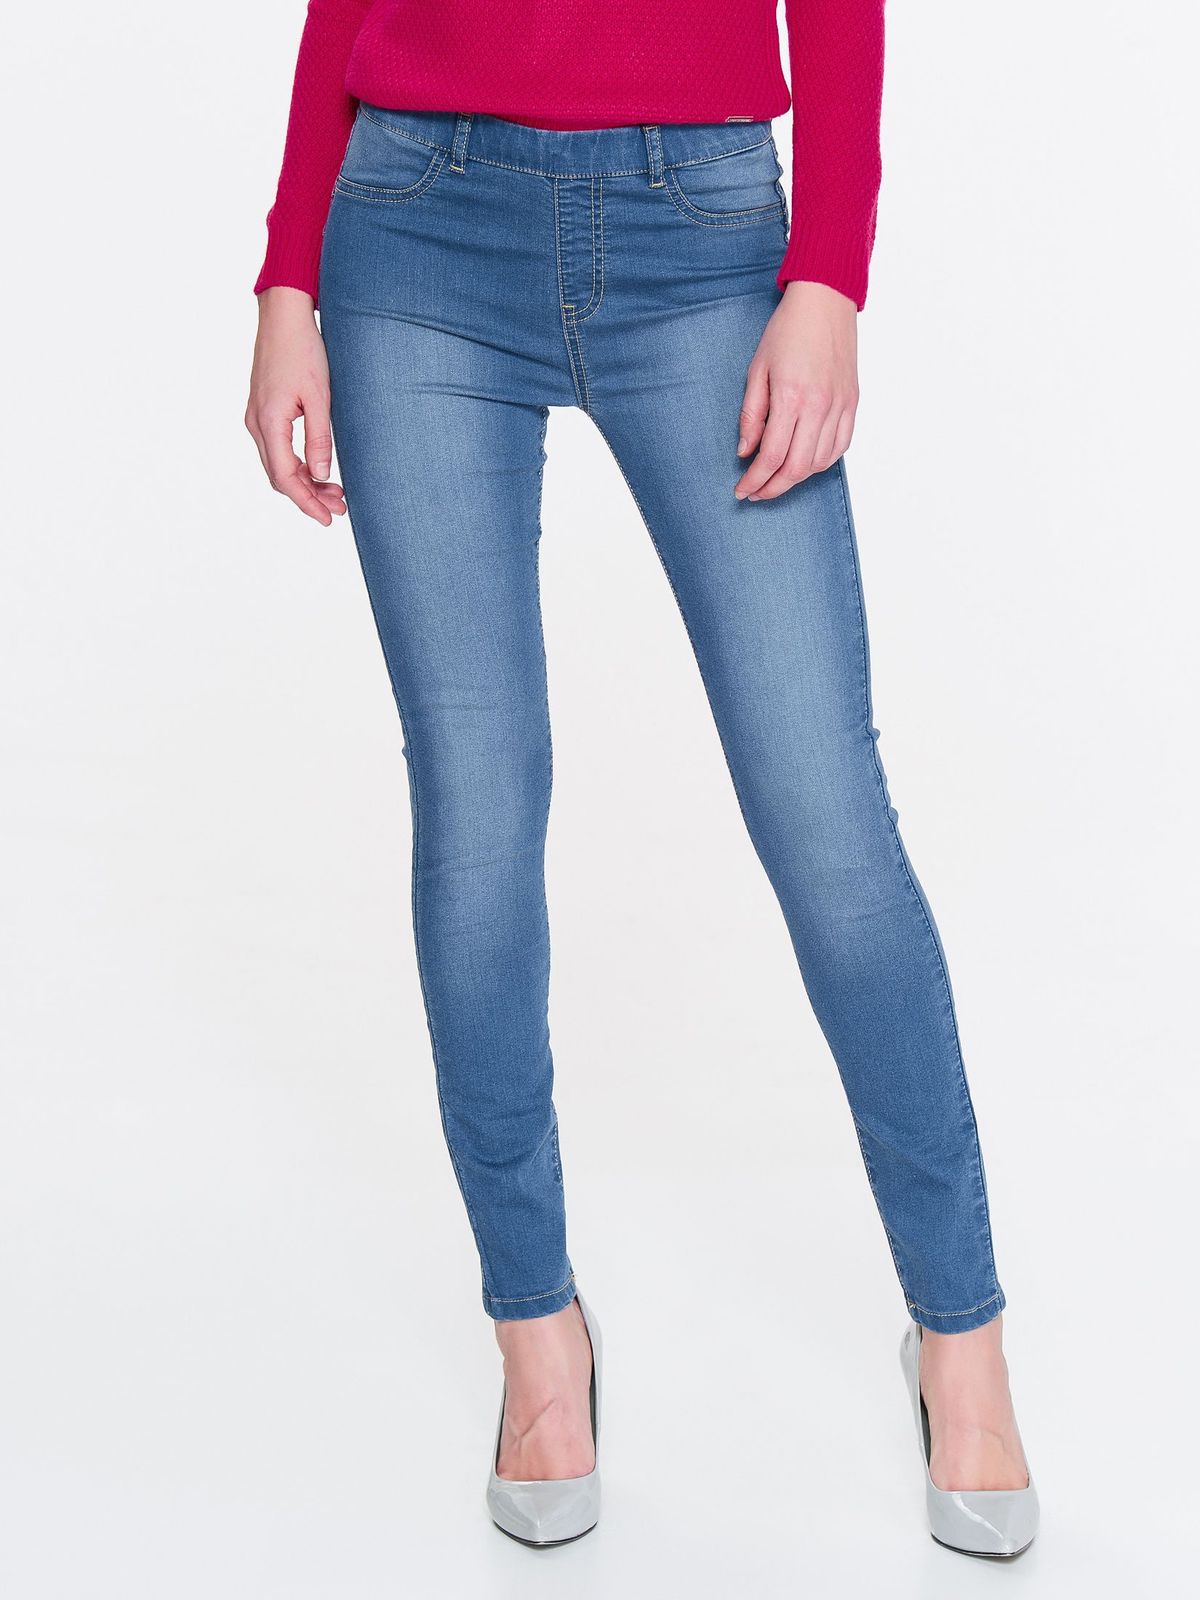 elastic top jeans